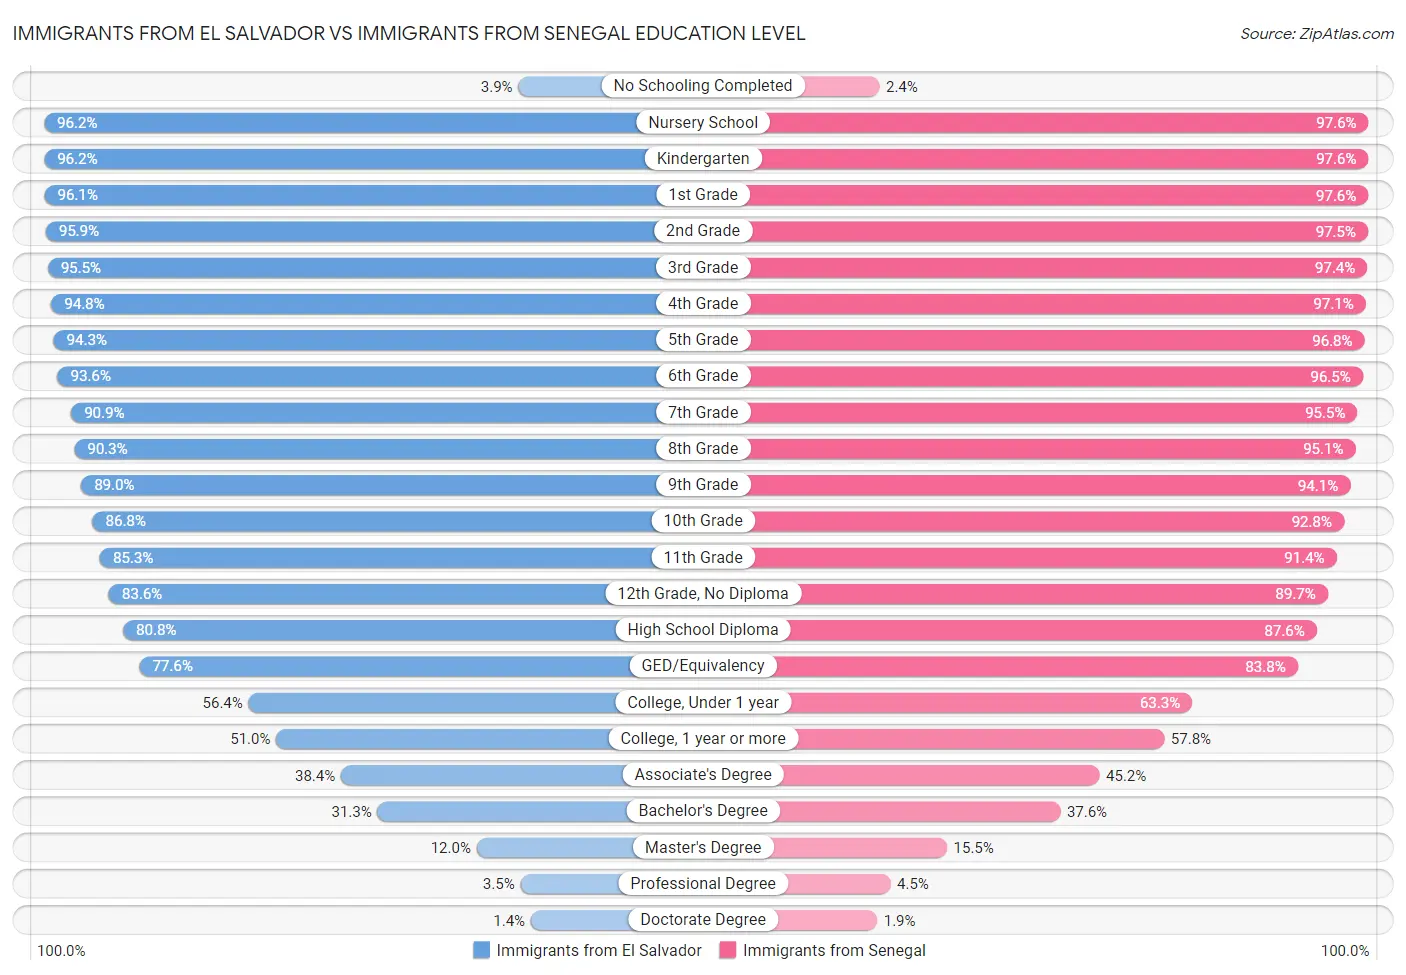 Immigrants from El Salvador vs Immigrants from Senegal Education Level